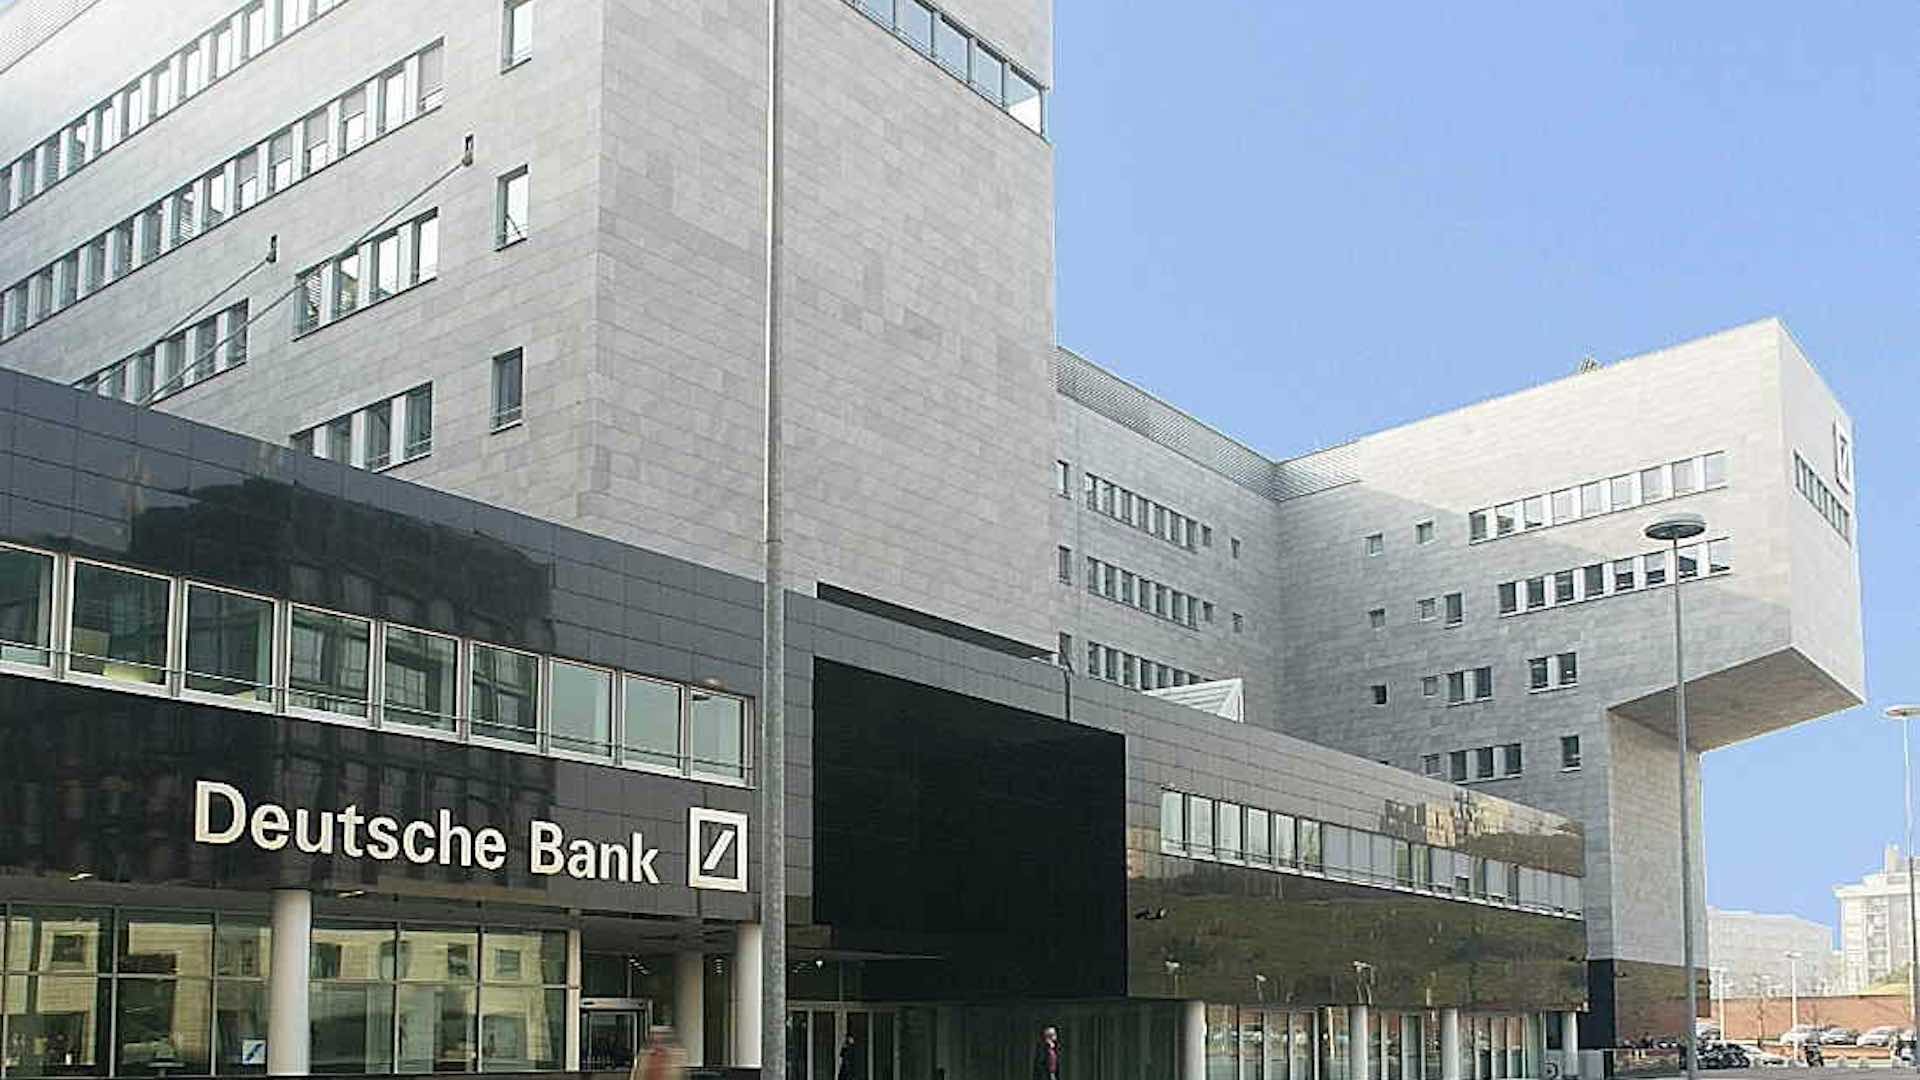 Deutsche Bank va supprimer 3 500 emplois et réaliser un bénéfice de 4,5 milliards de dollars